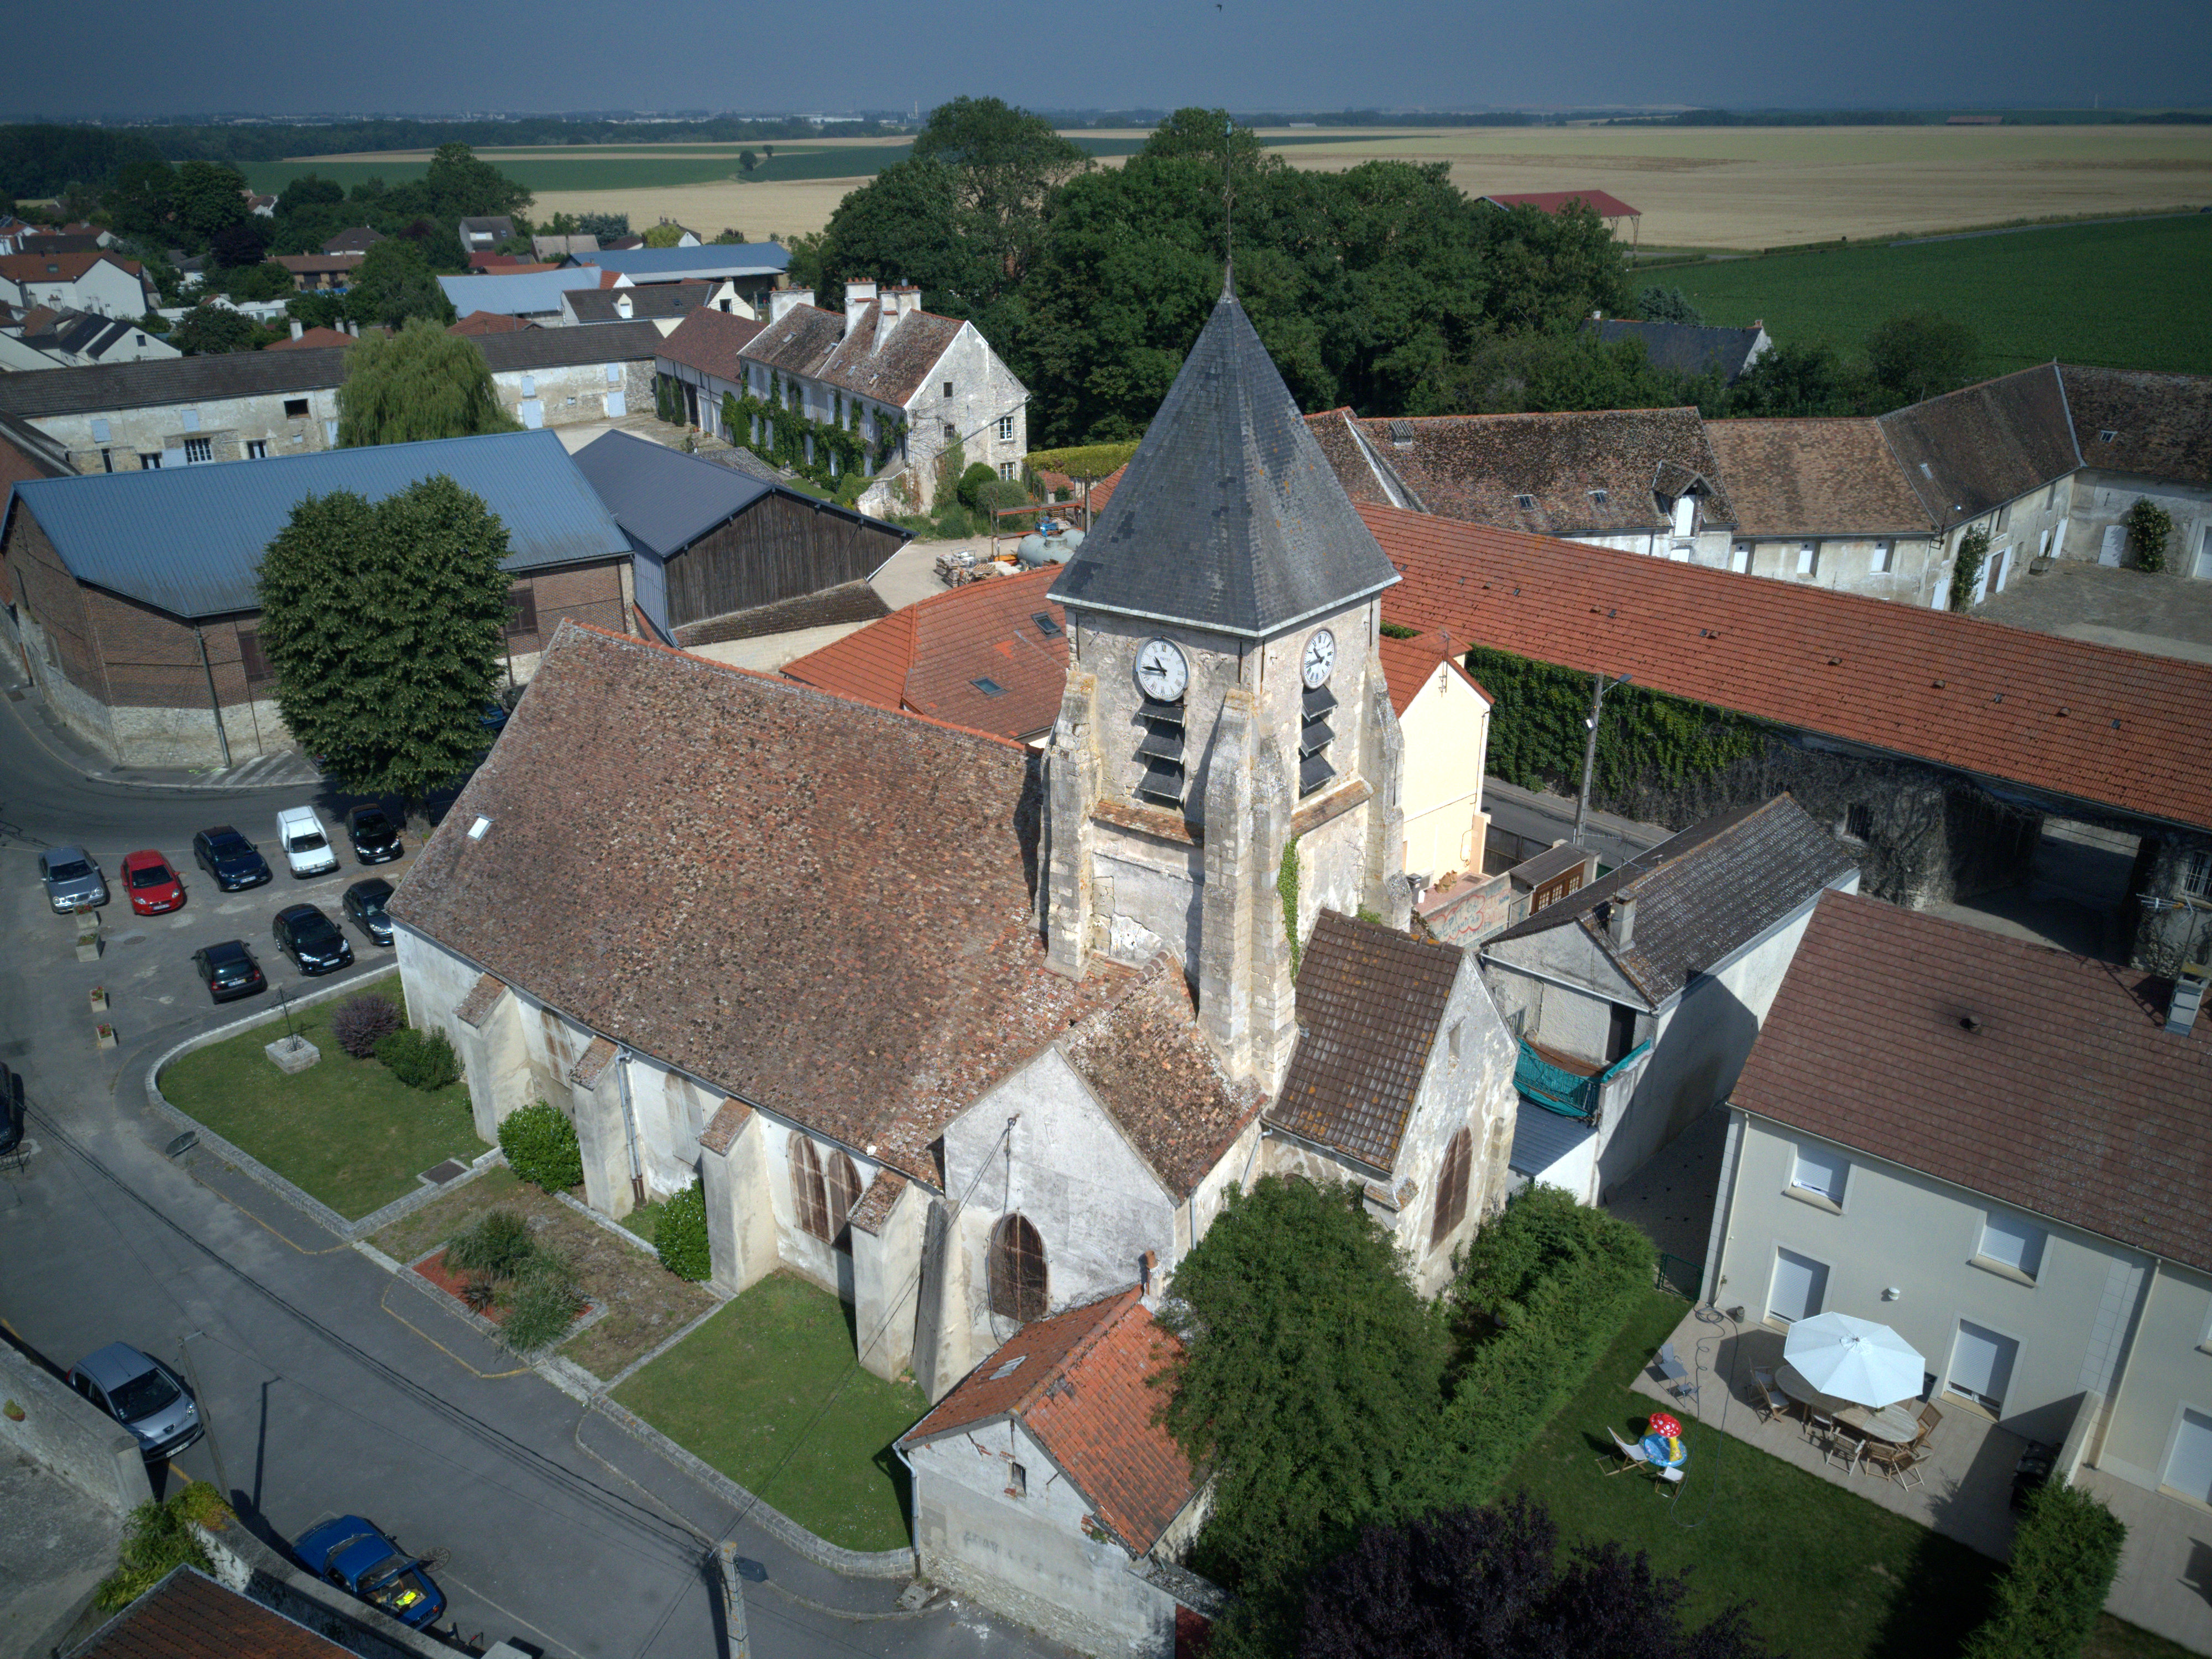 L'Eglise St Pierre